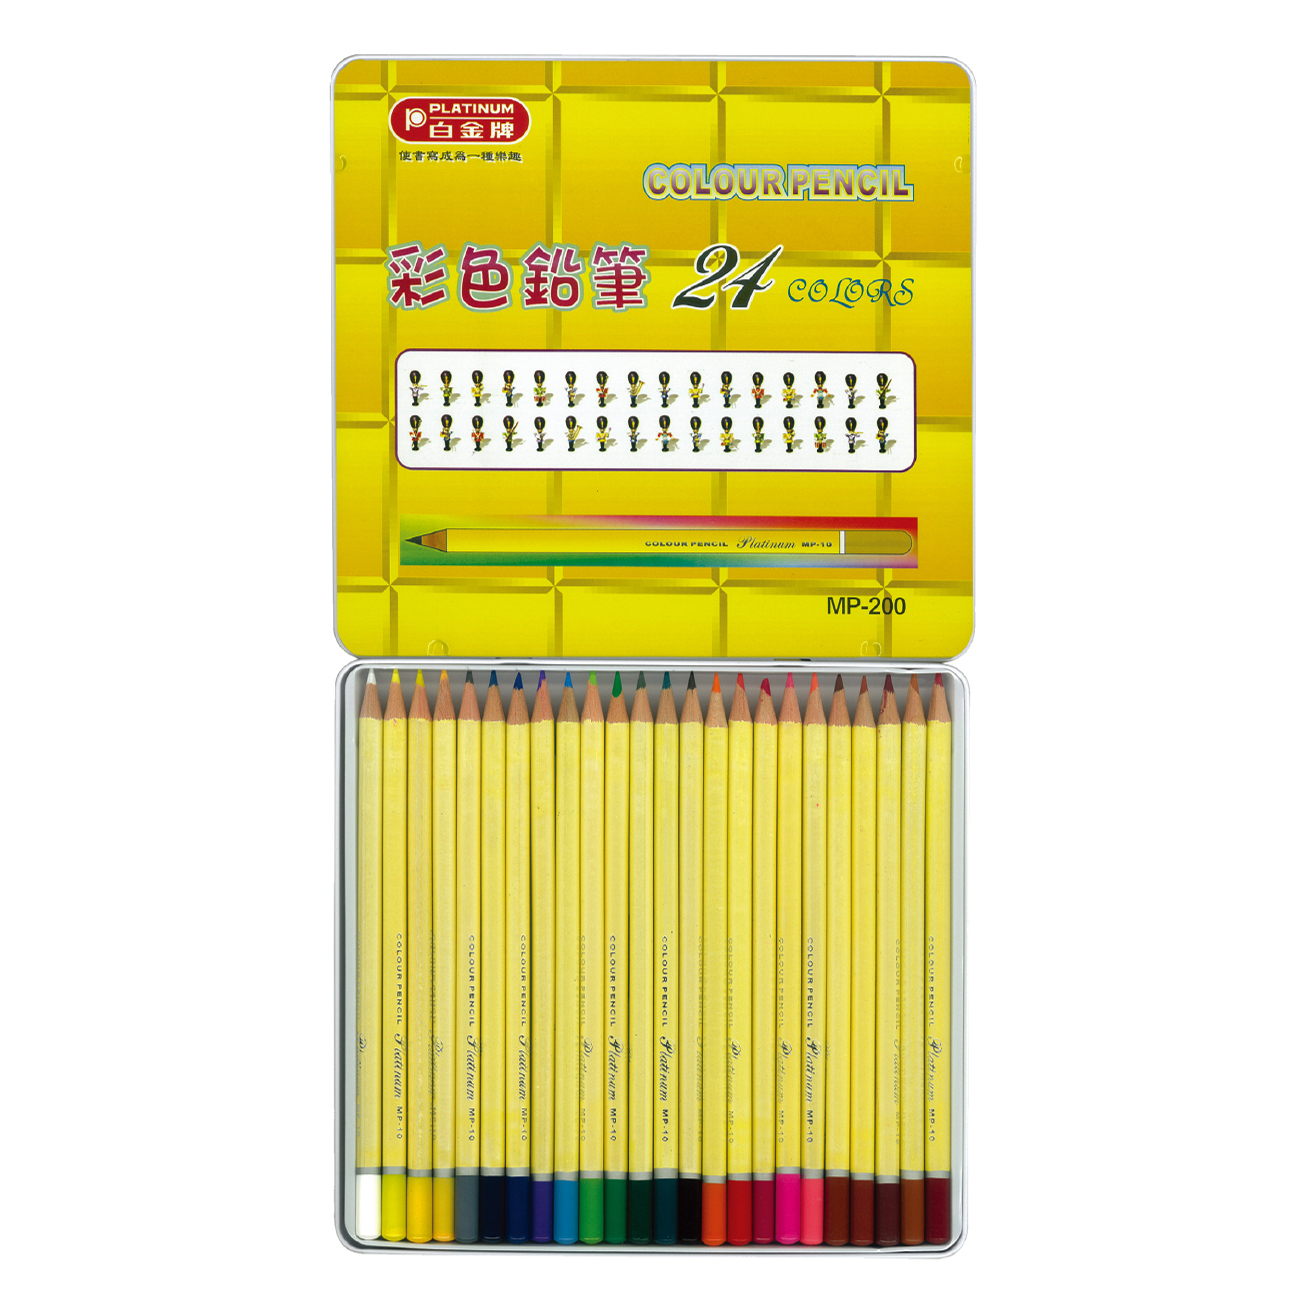 【文具通】PLATINUM 白金 MP-240 塗頭色筆/色鉛筆/彩色鉛筆 24色 油性 鐵盒